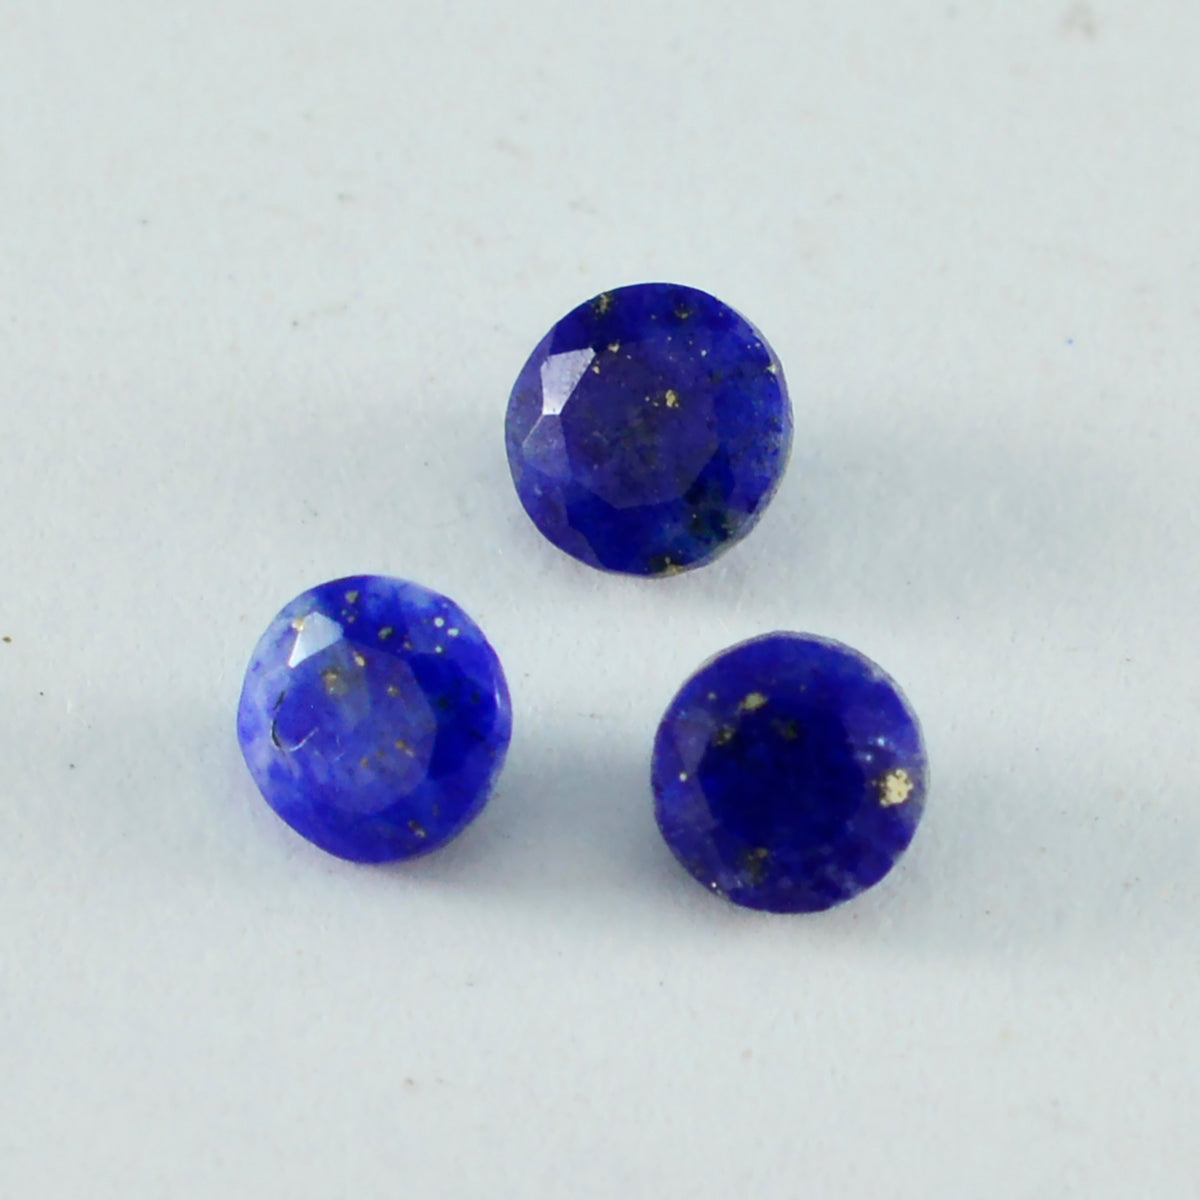 Riyogems 1 pièce de lapis-lazuli bleu véritable à facettes 10x10mm forme ronde a + 1 qualité pierre précieuse en vrac